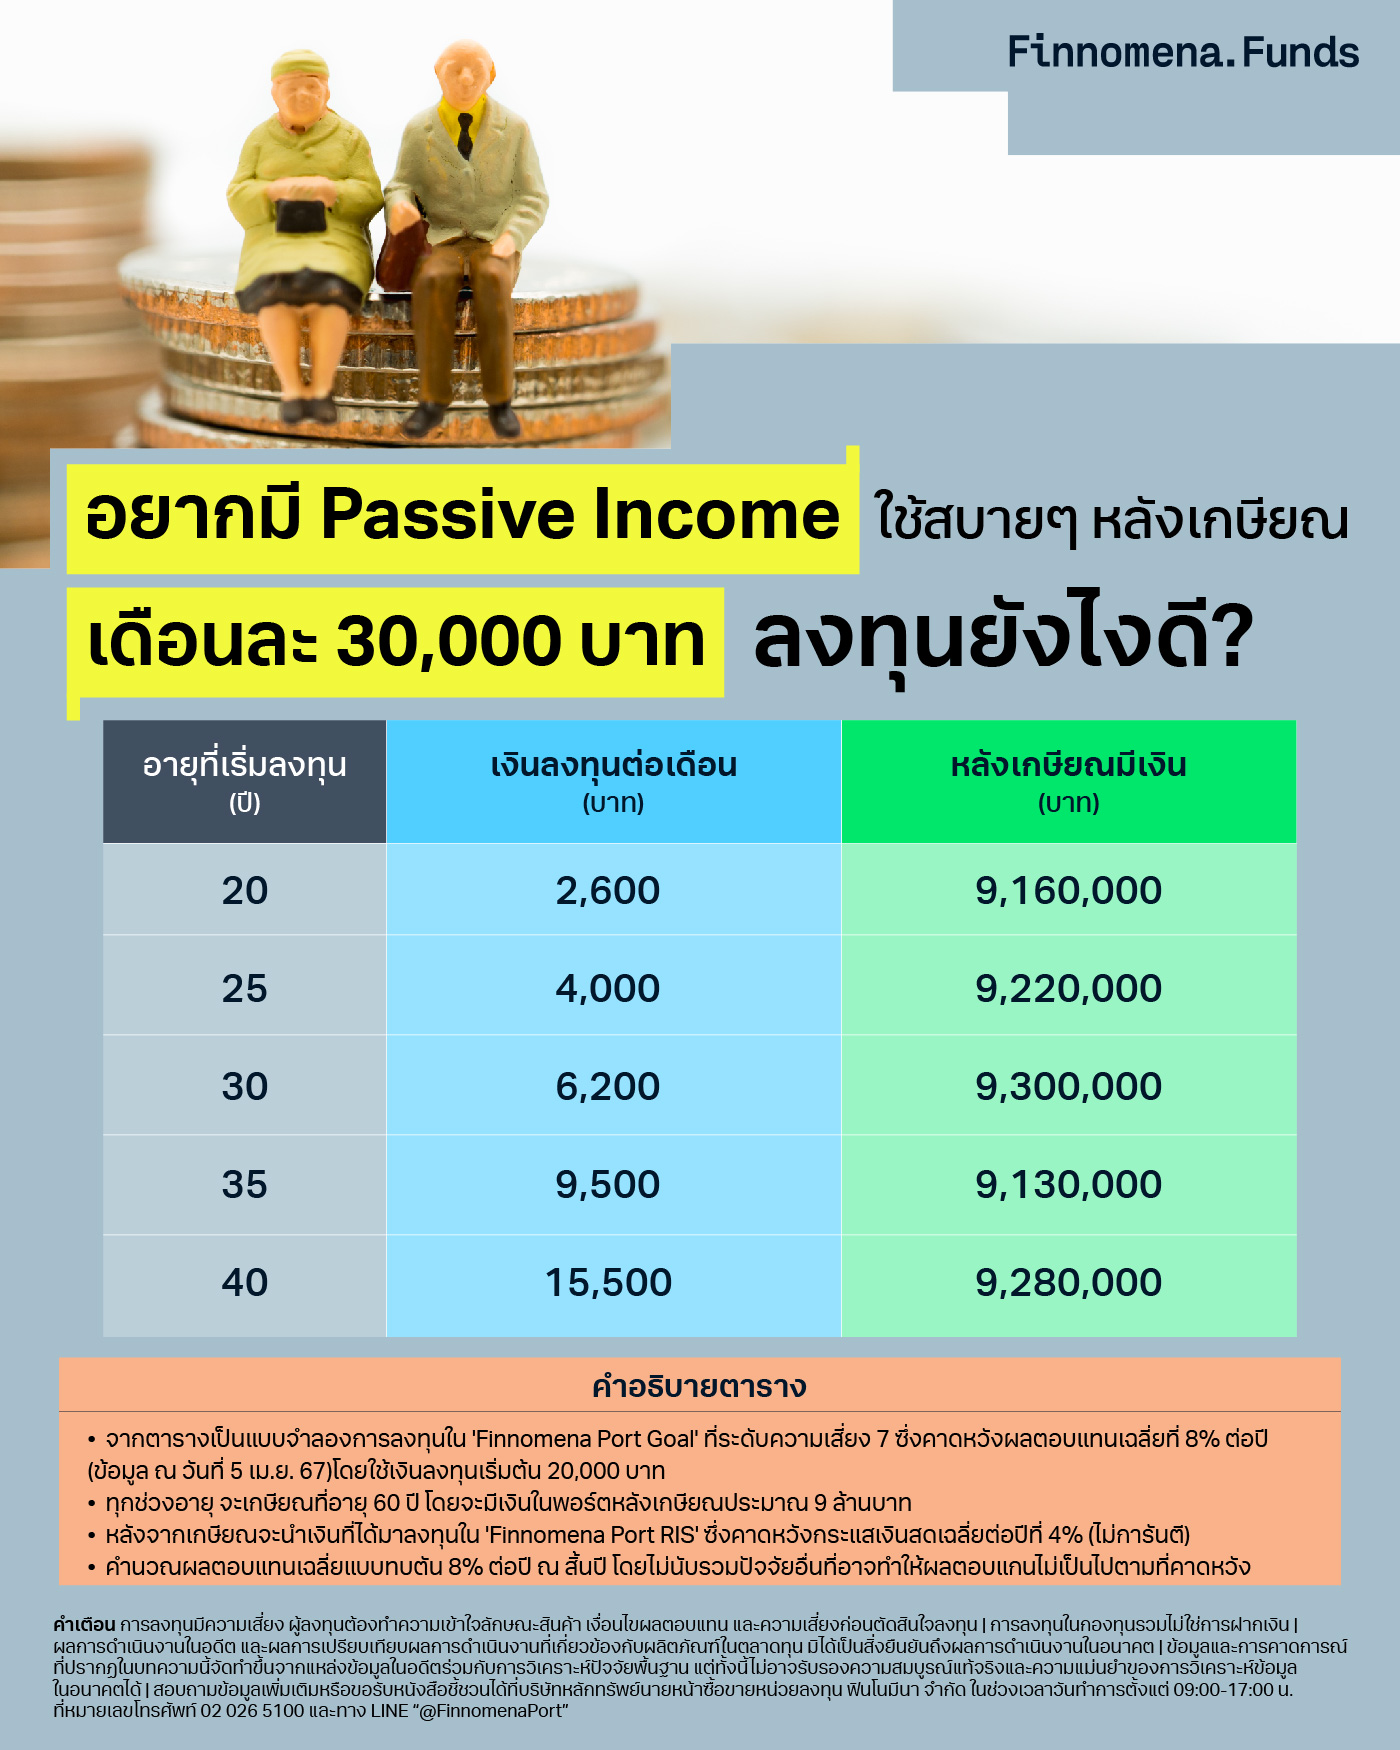 อยากมี Passive Income ใช้สบายๆ หลังเกษียณ เดือนละ 30,000 บาท ลงทุนยังไงดี?